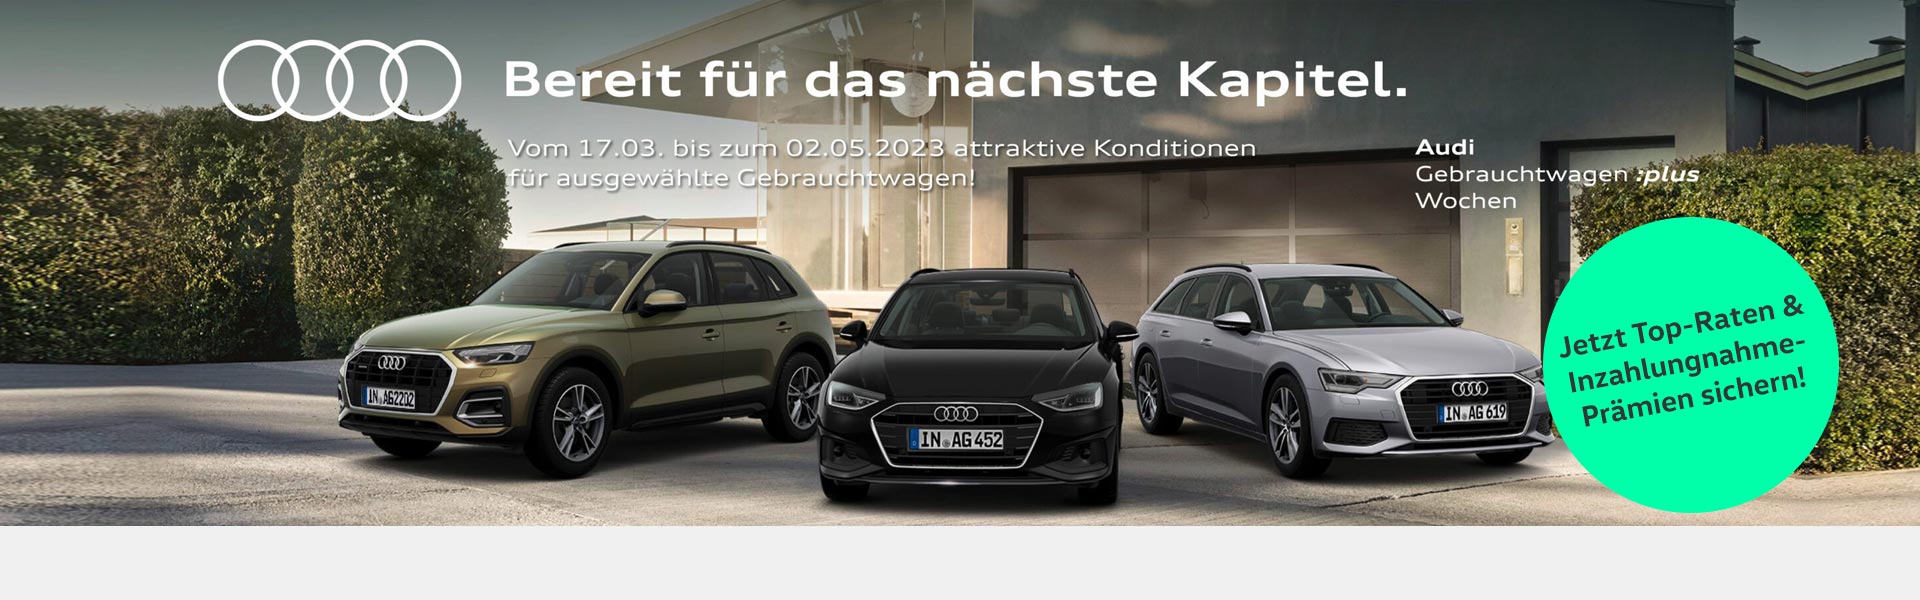 Audi Gebrauchtwagenwochen Borgmann